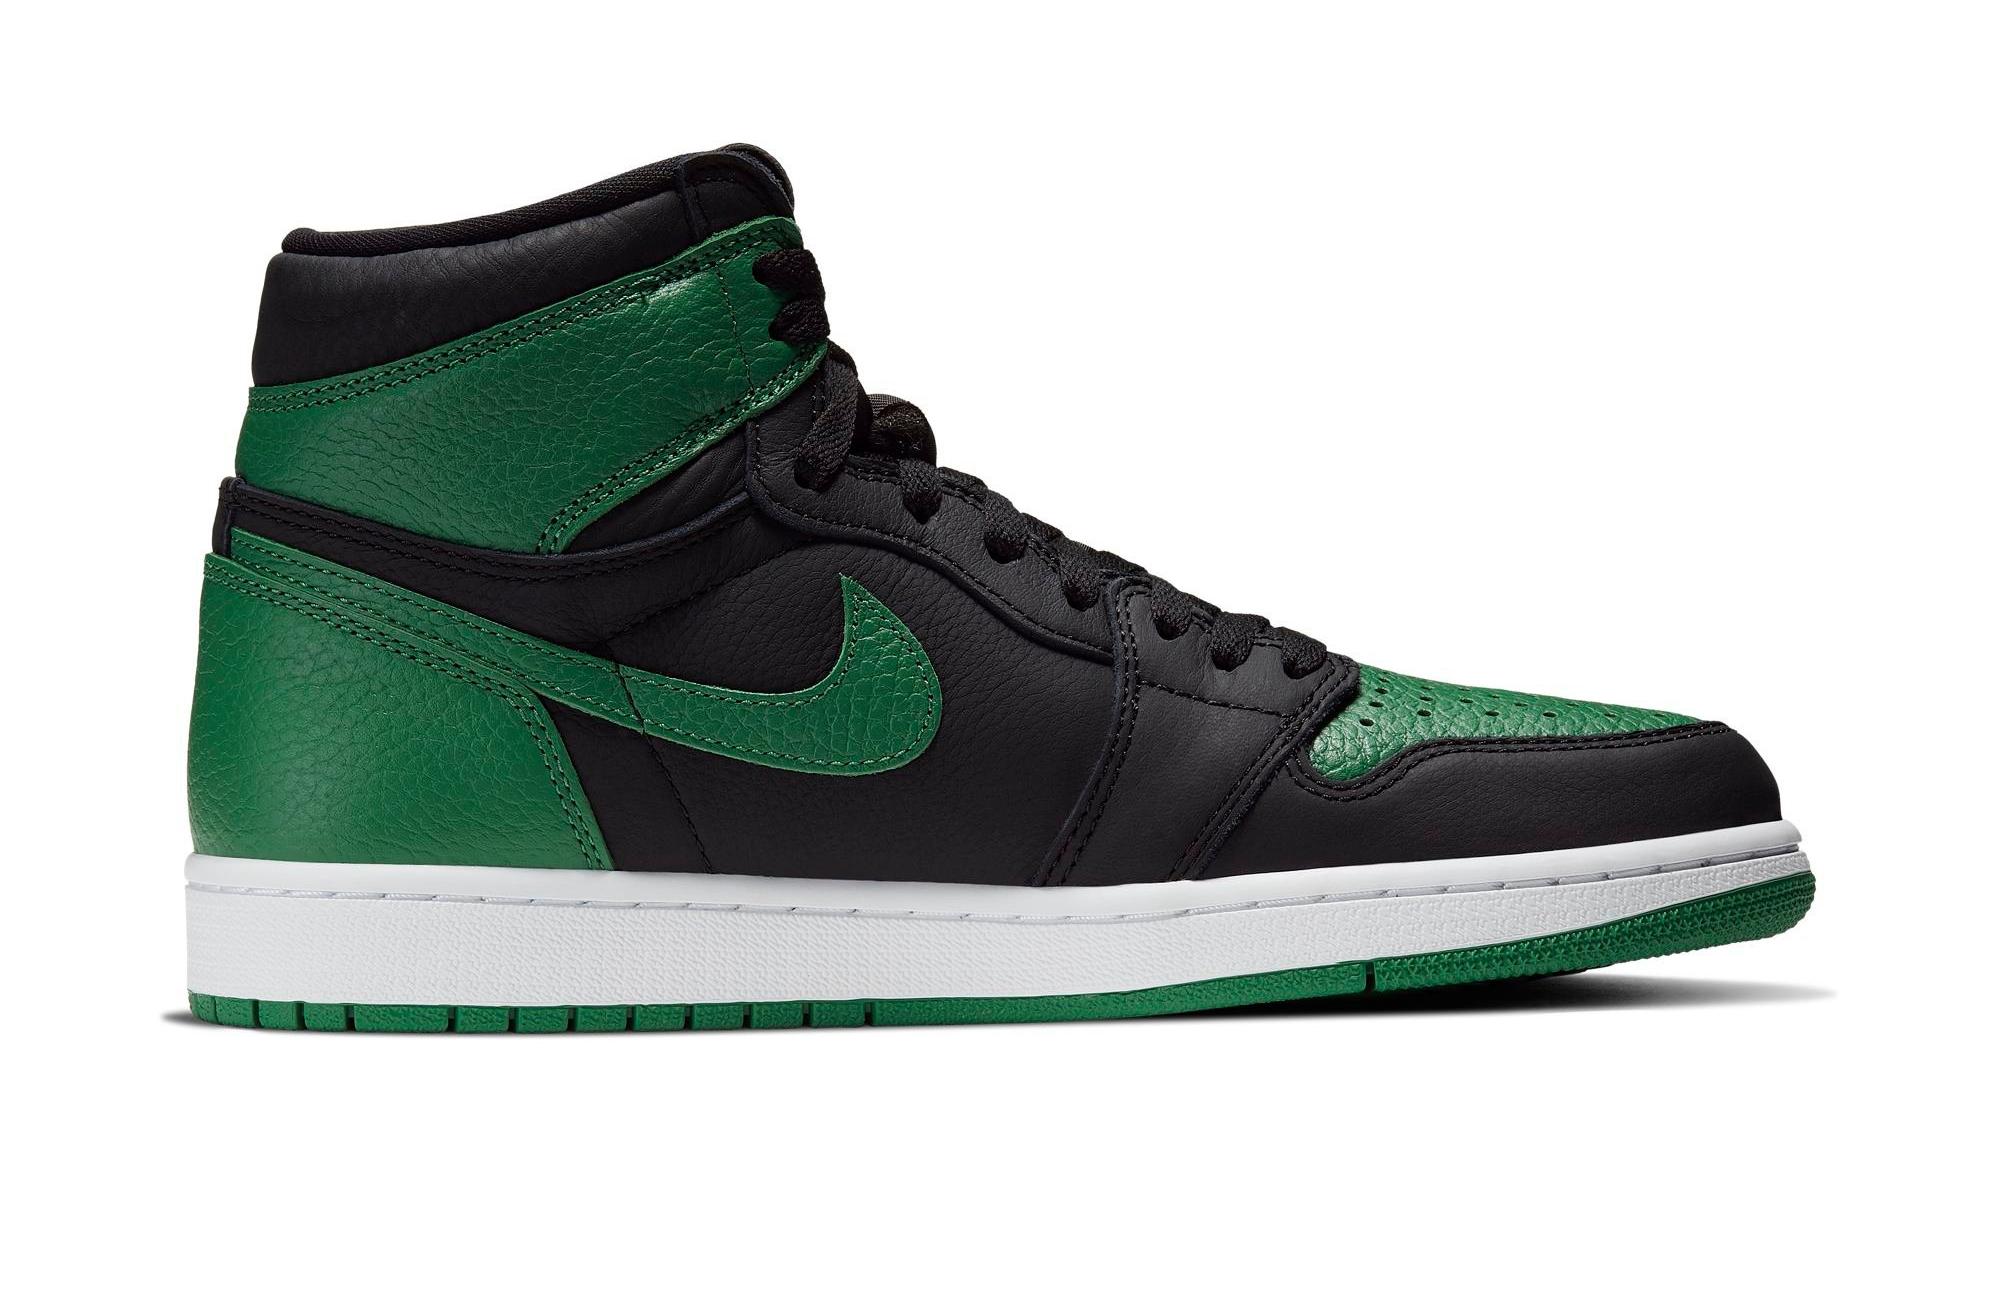 Sneakers Release – Jordan 1 Retro High OG “Pine Green&